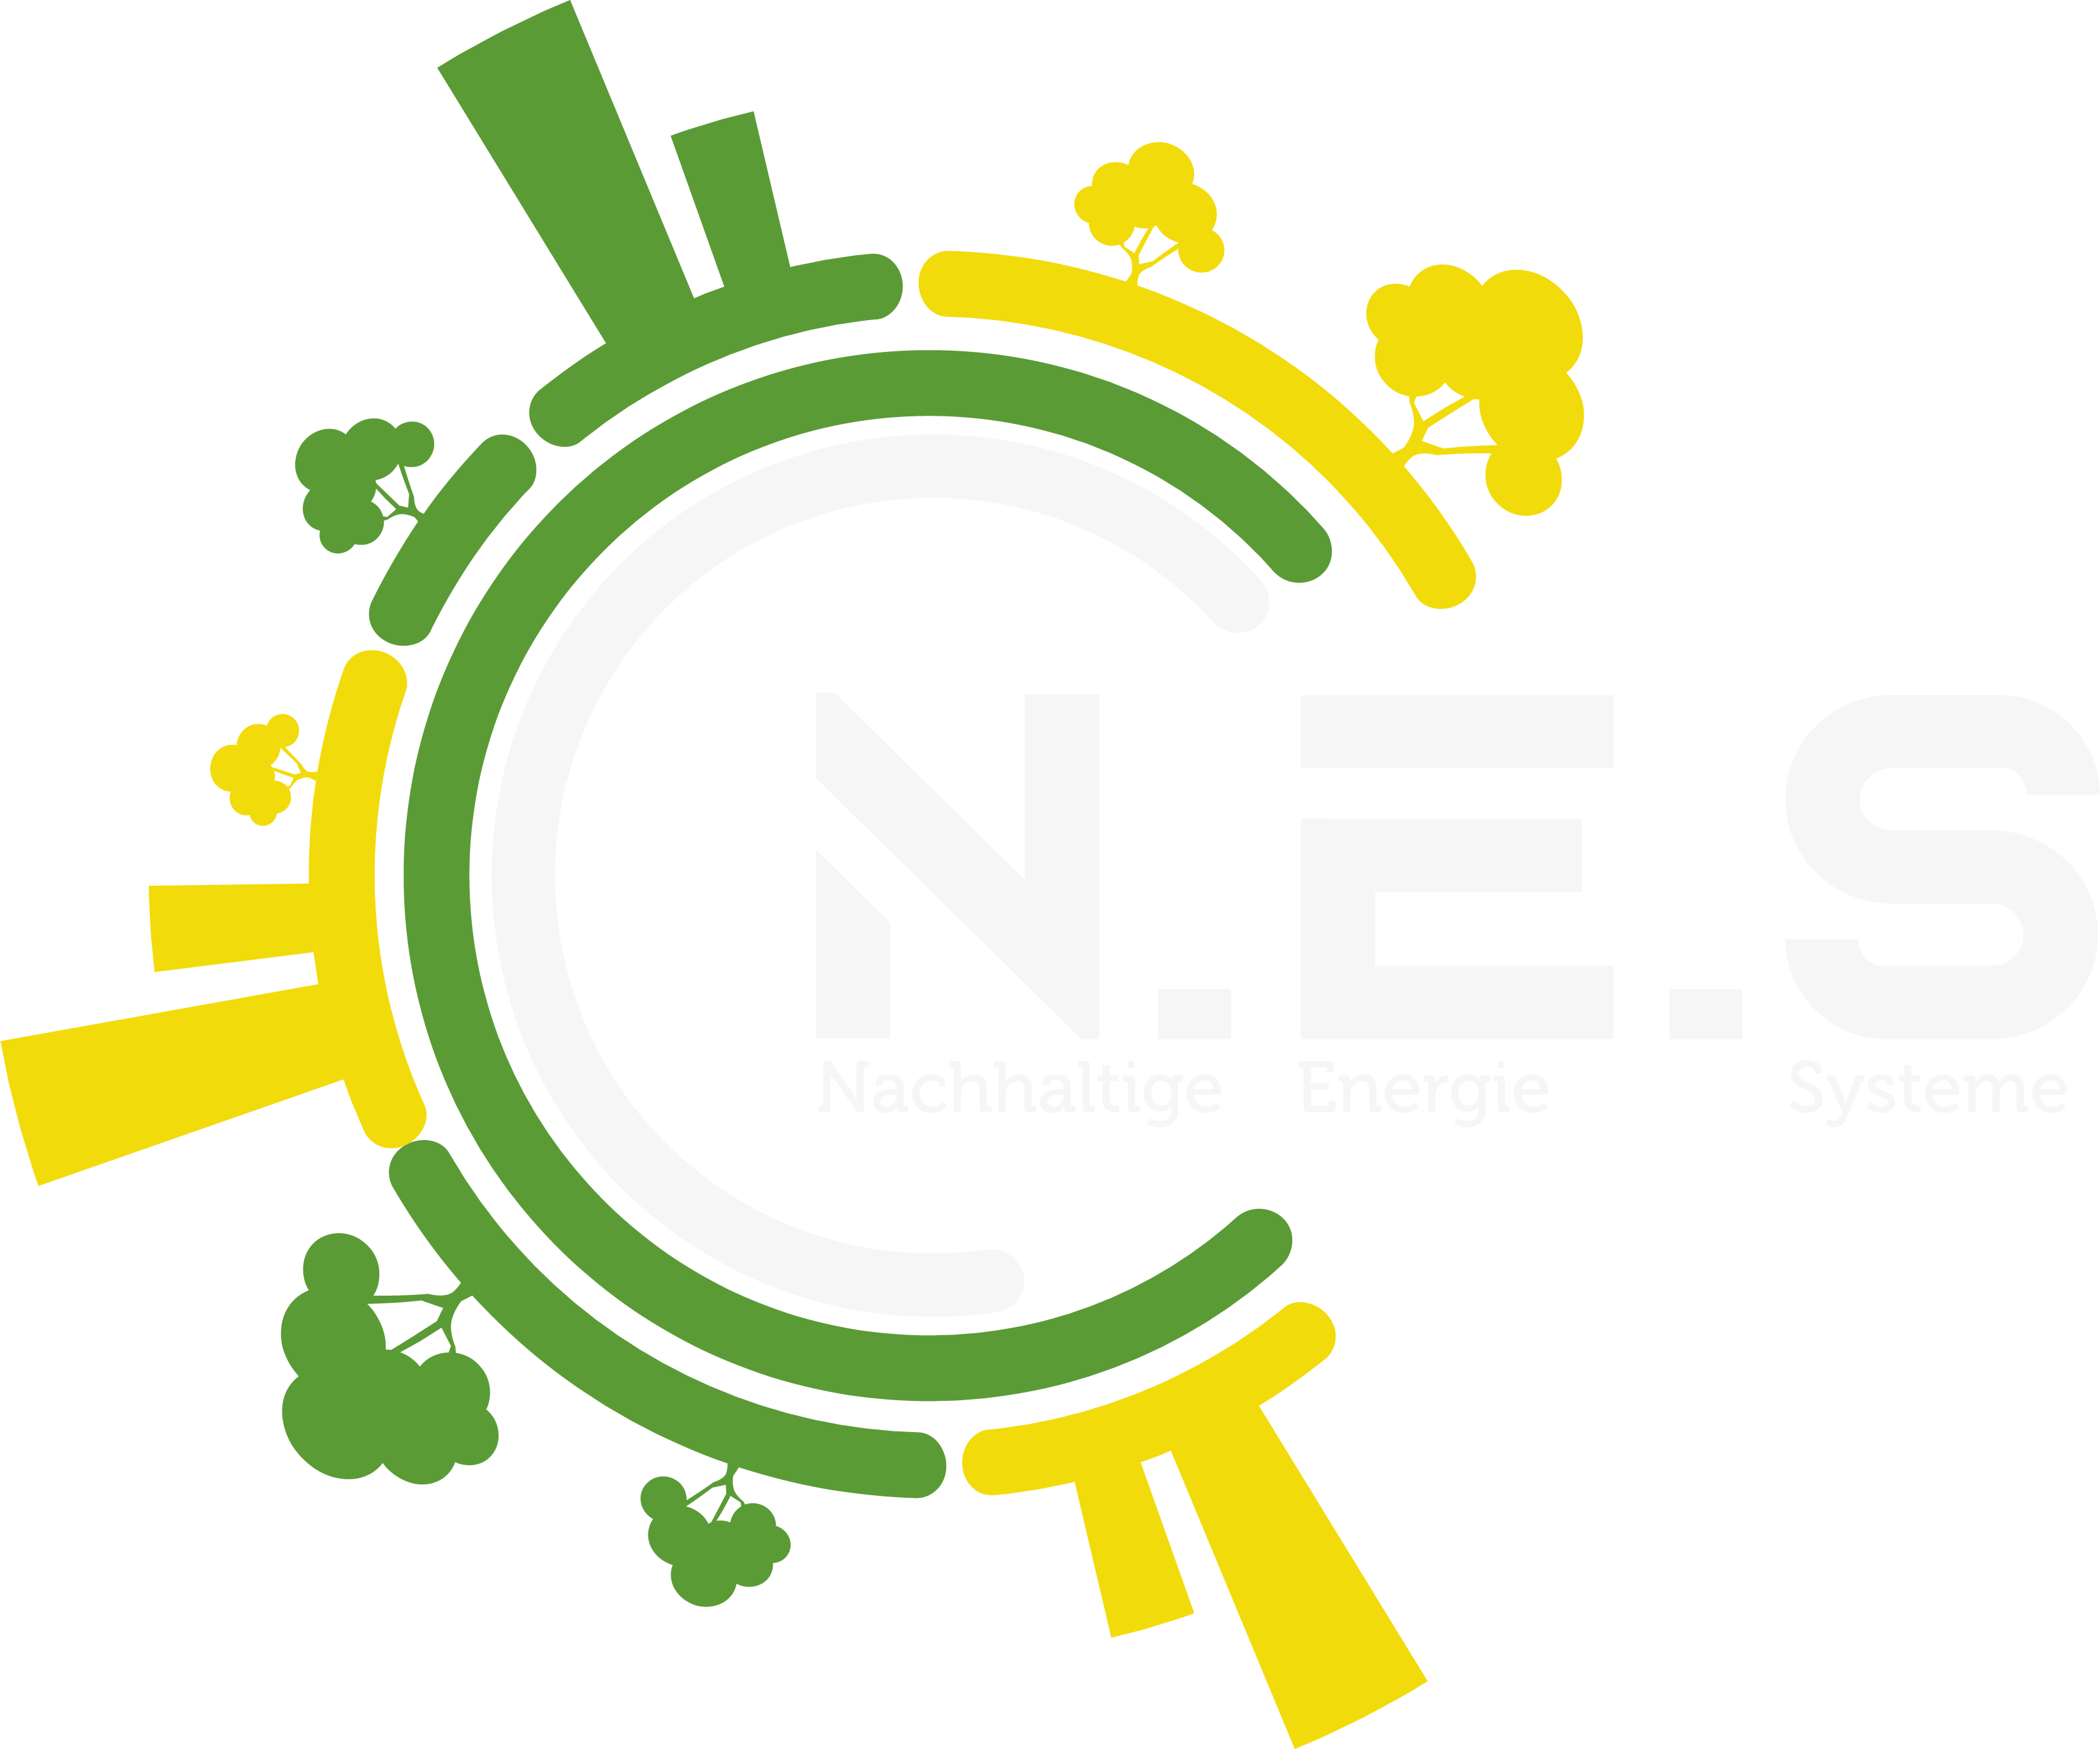 N.E.S GmbH